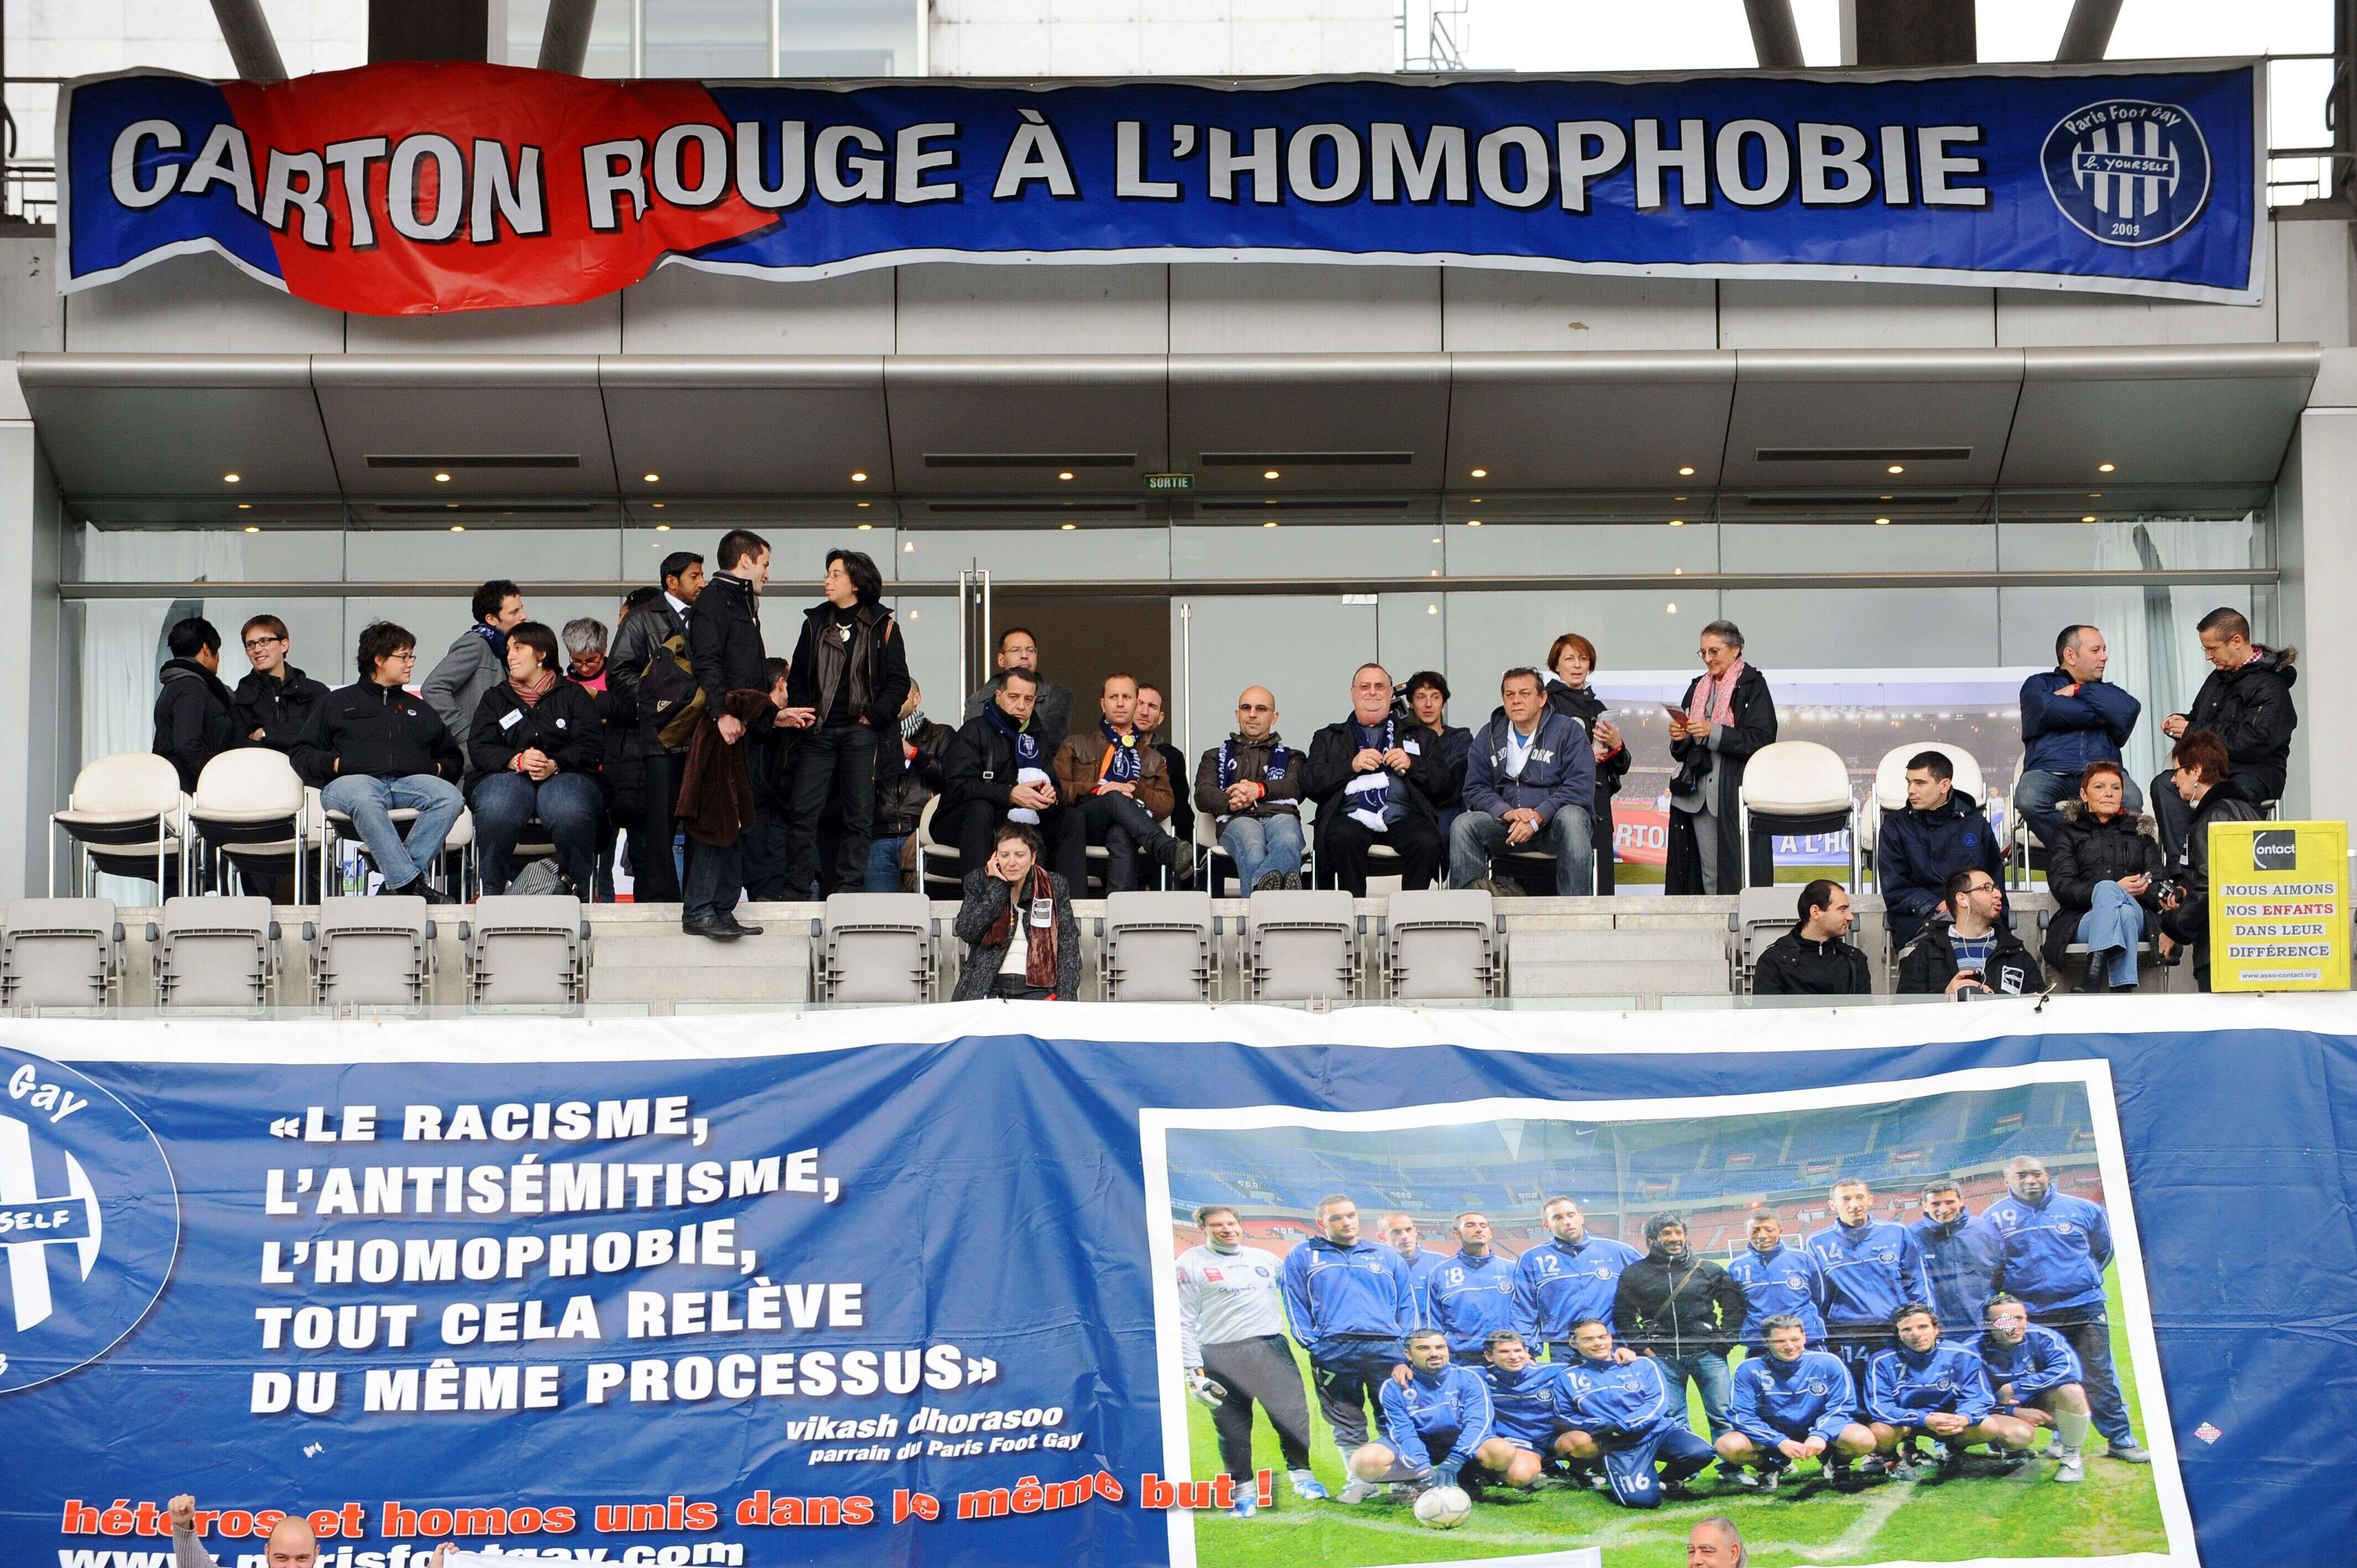 Une banderole affichée lors d'un match de football de gala contre l'homophobie et les discriminations, le 14 novembre 2009 au stade Charléty à Paris (photo d'illustration).